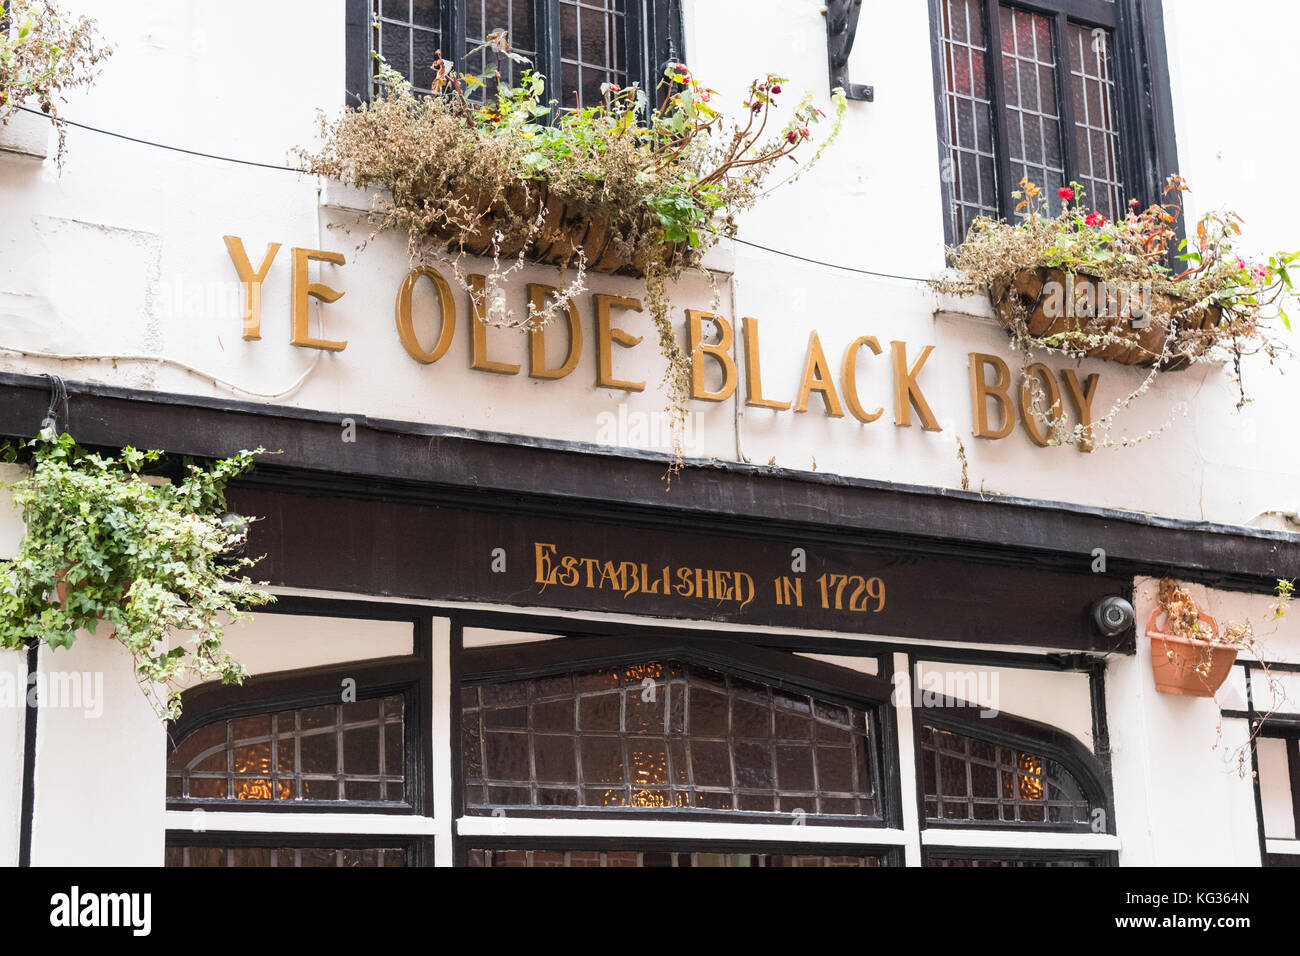 Ye Olde Black Boy historic pub, Hull, England, UK Stock Photo